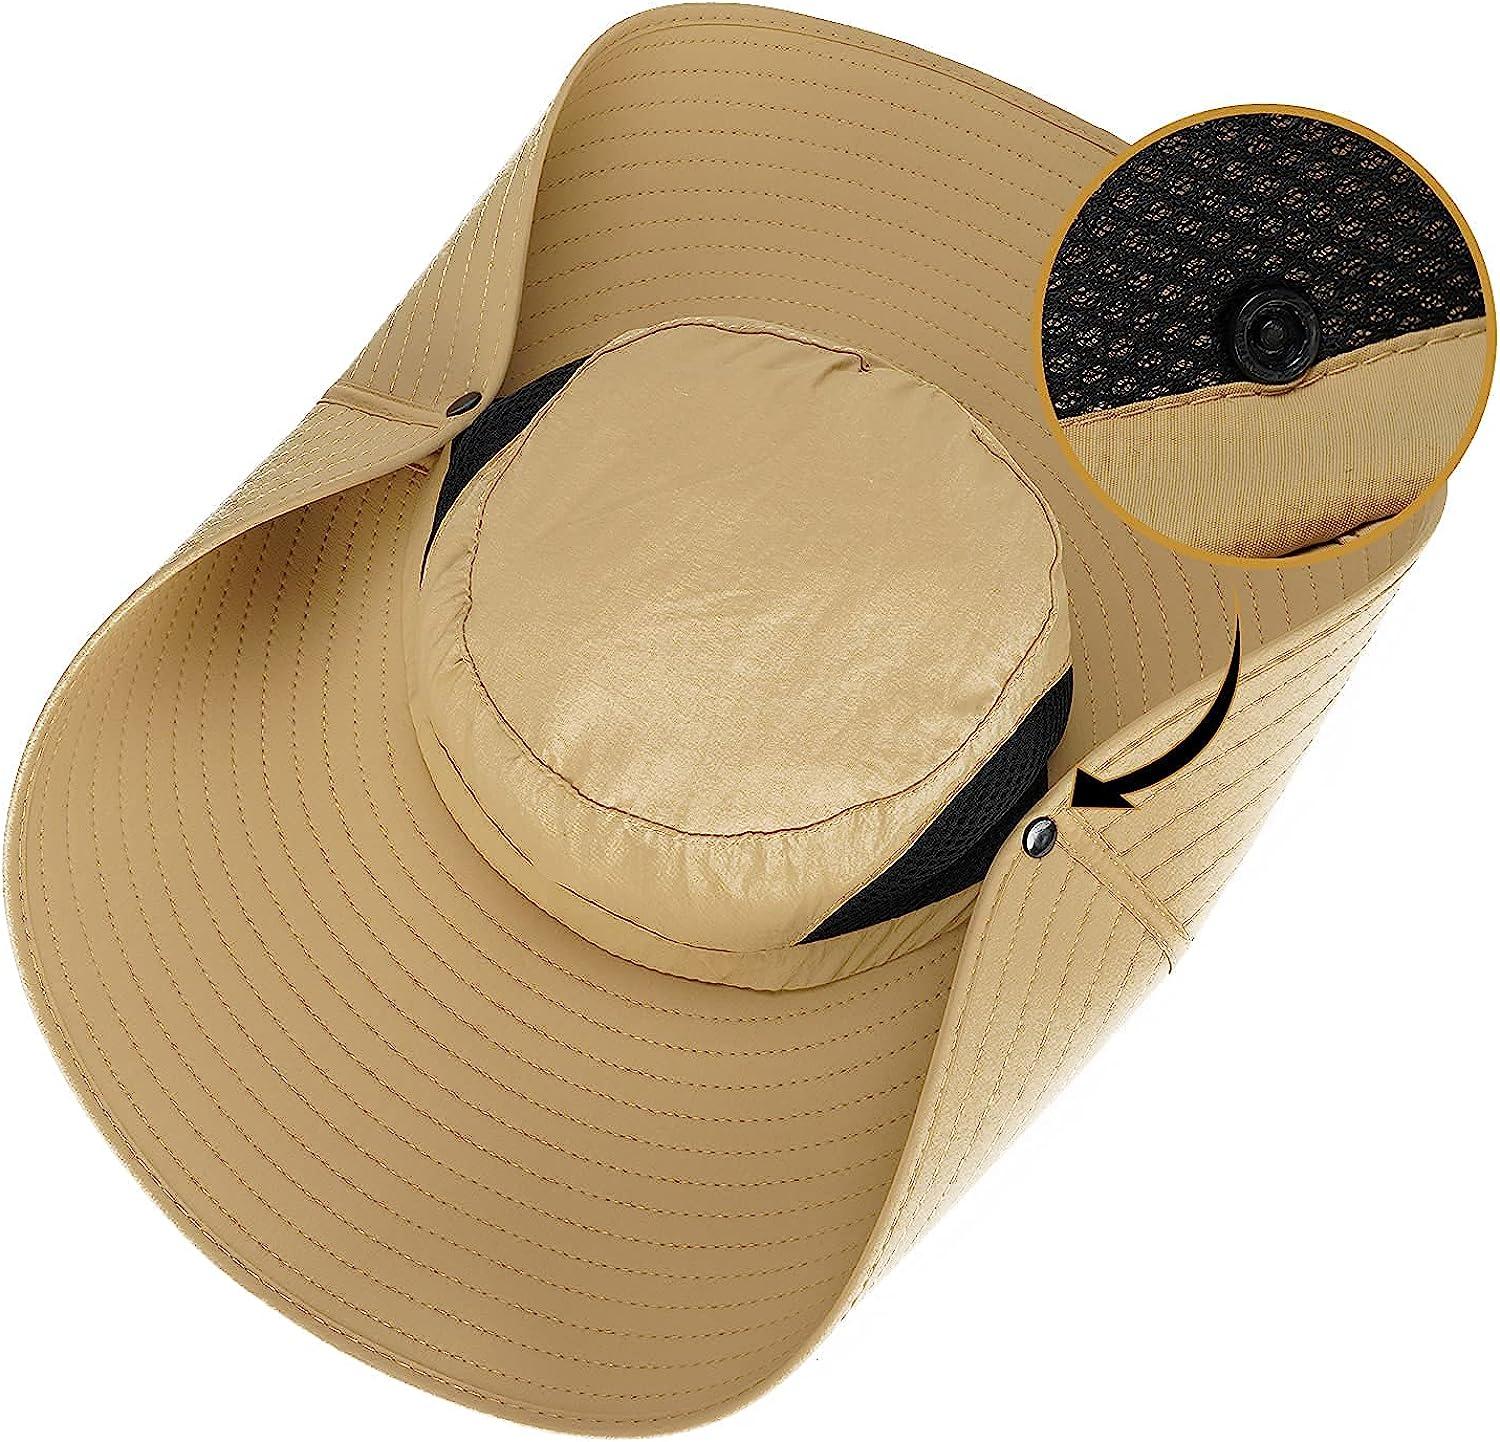 Leotruny Men Wide Brim Sun Hats UPF50+ Waterproof Breathable